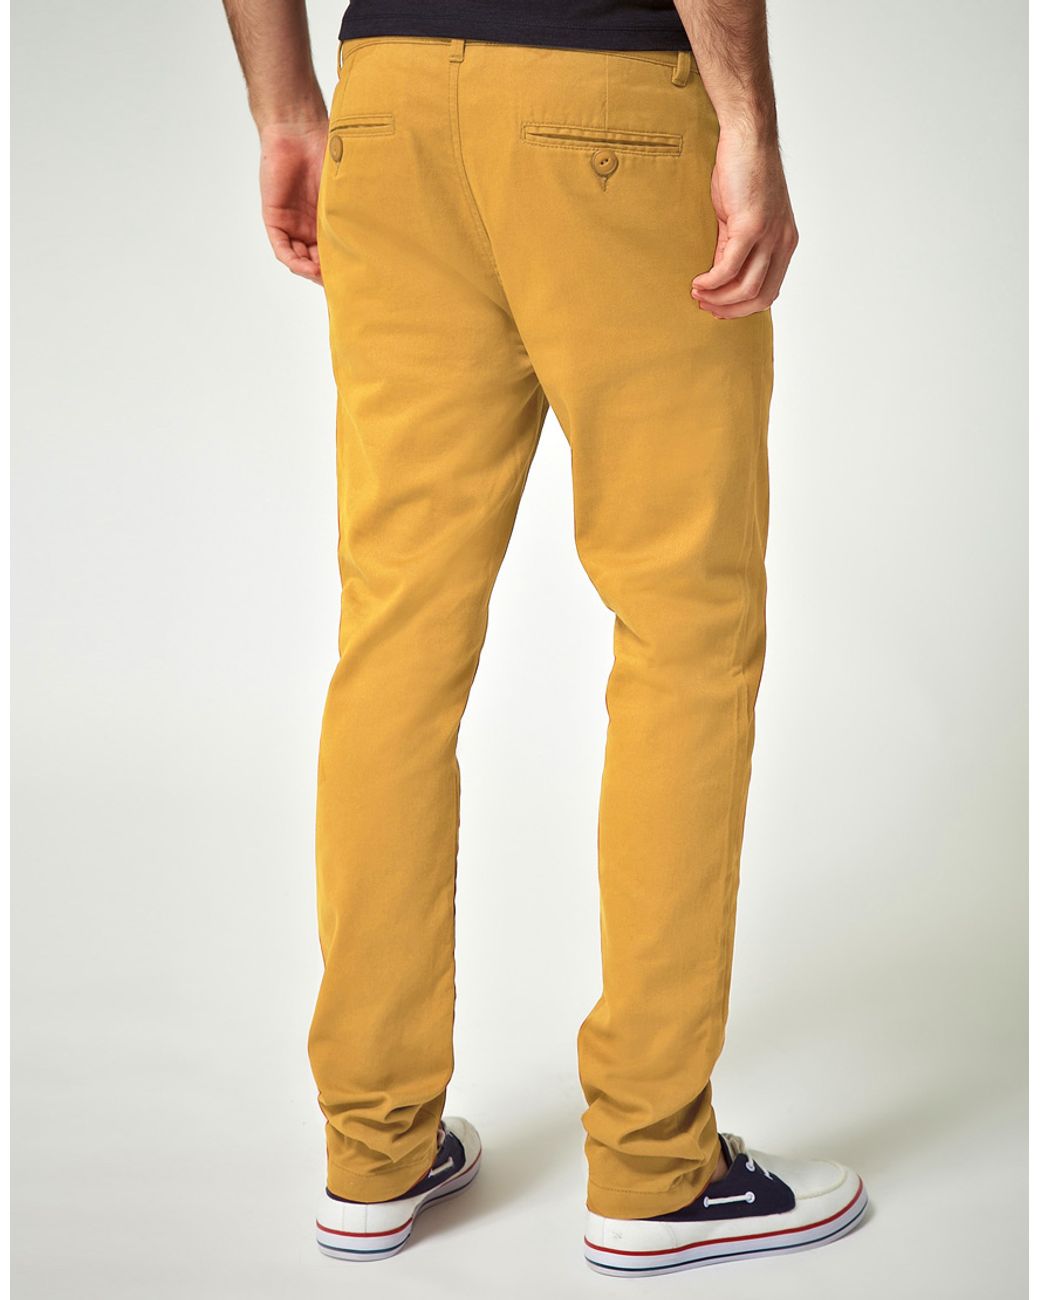 Горчичные джинсы. Горчичные джинсы мужские. Брюки горчичного цвета мужские. Джинсы горчичного цвета мужские. Мужские брюки горчица.